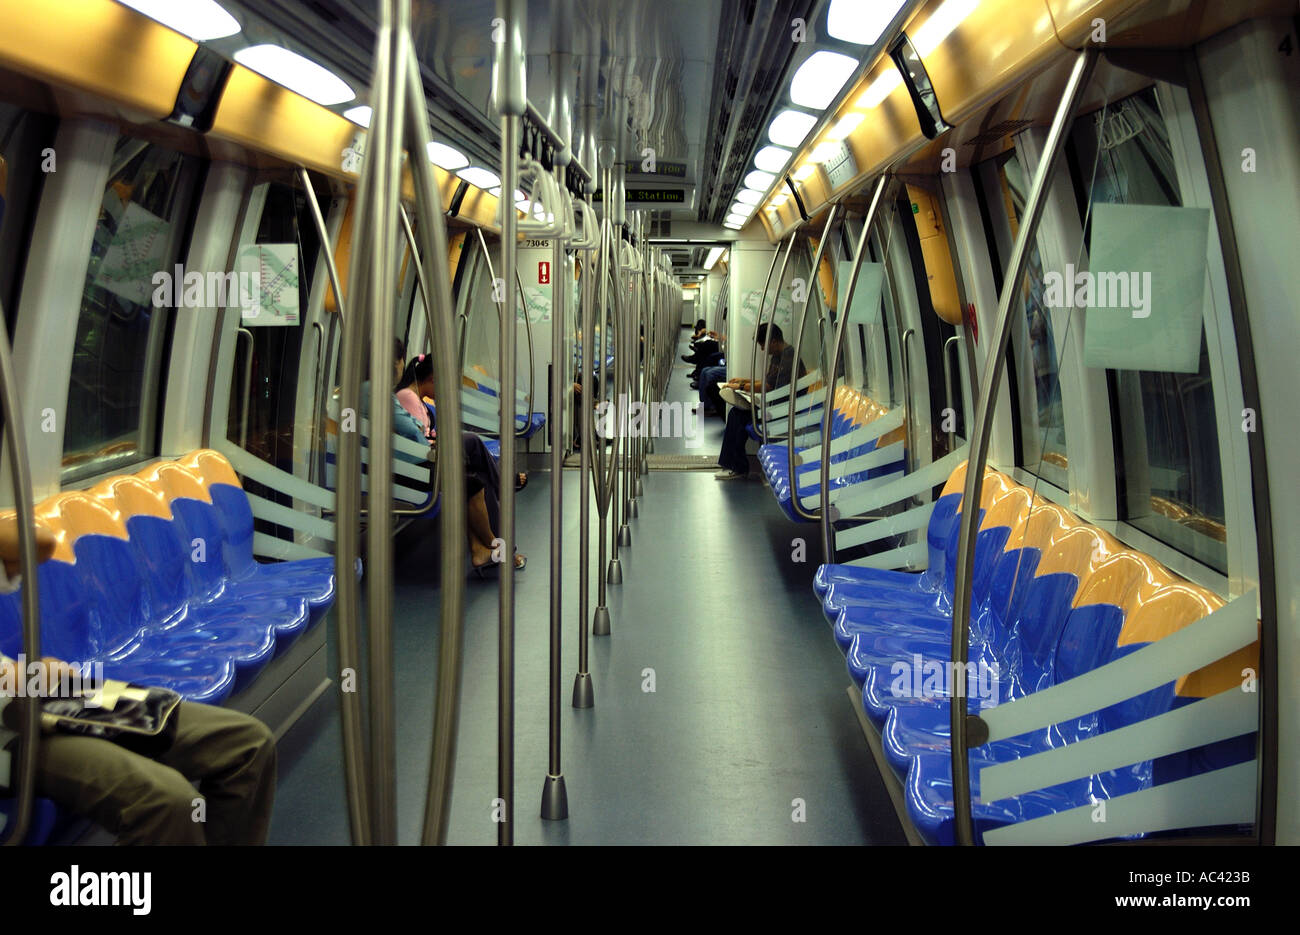 All'interno di un treno sulla metropolitana di Singapore, chiamato MRT - sistema di trasporto rapido di massa. Foto Stock